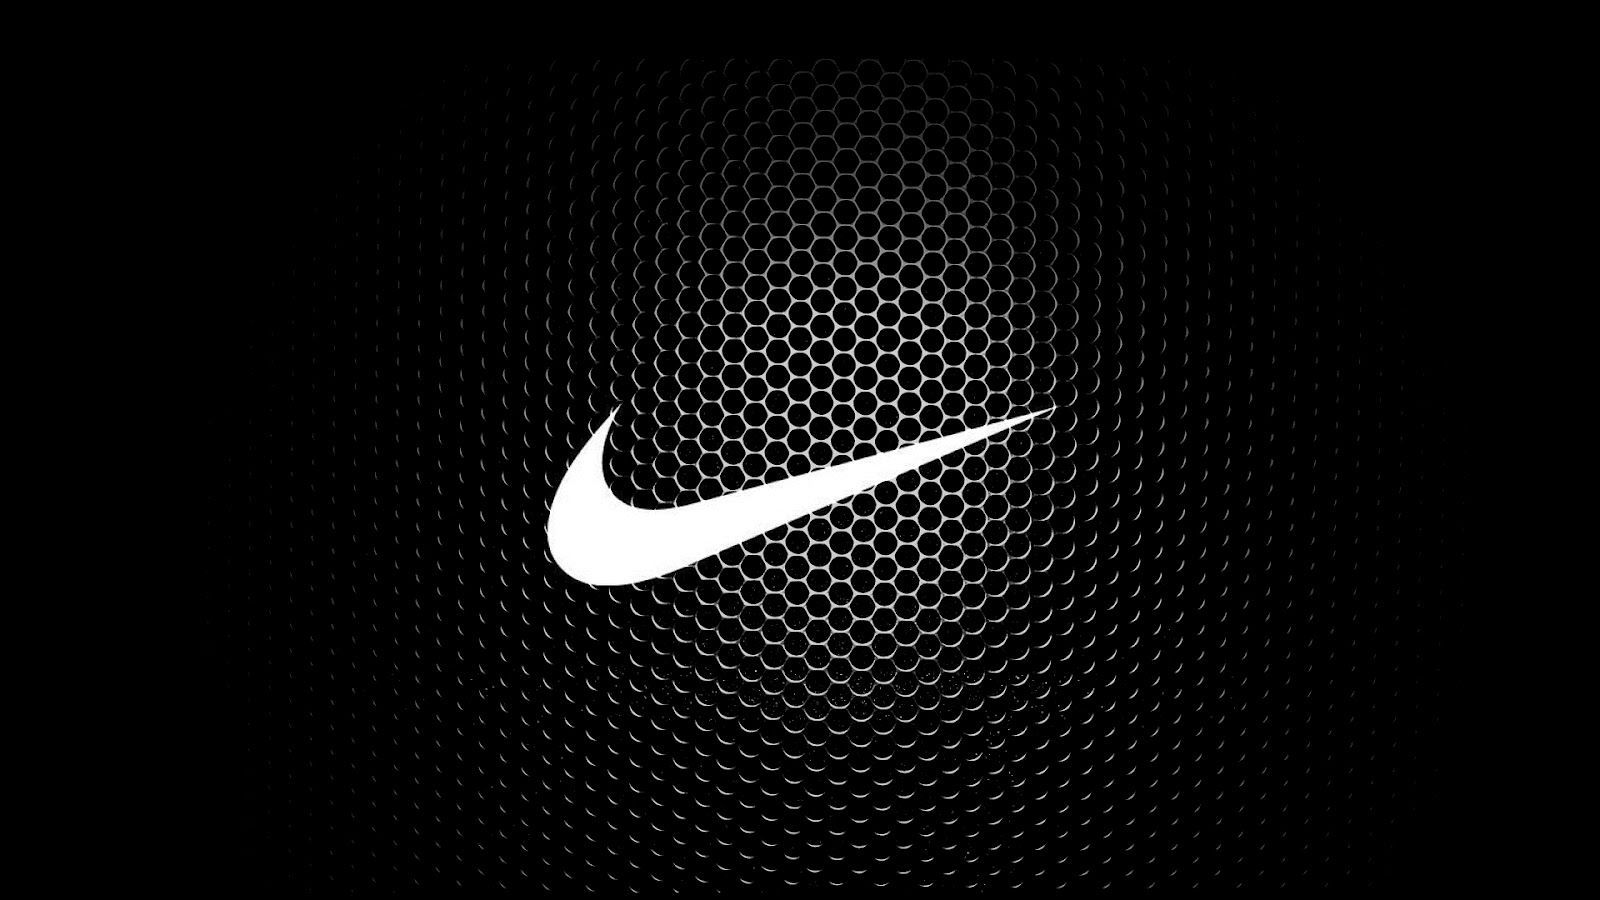 Nike Logos Wallpapers - Wallpaper Cave